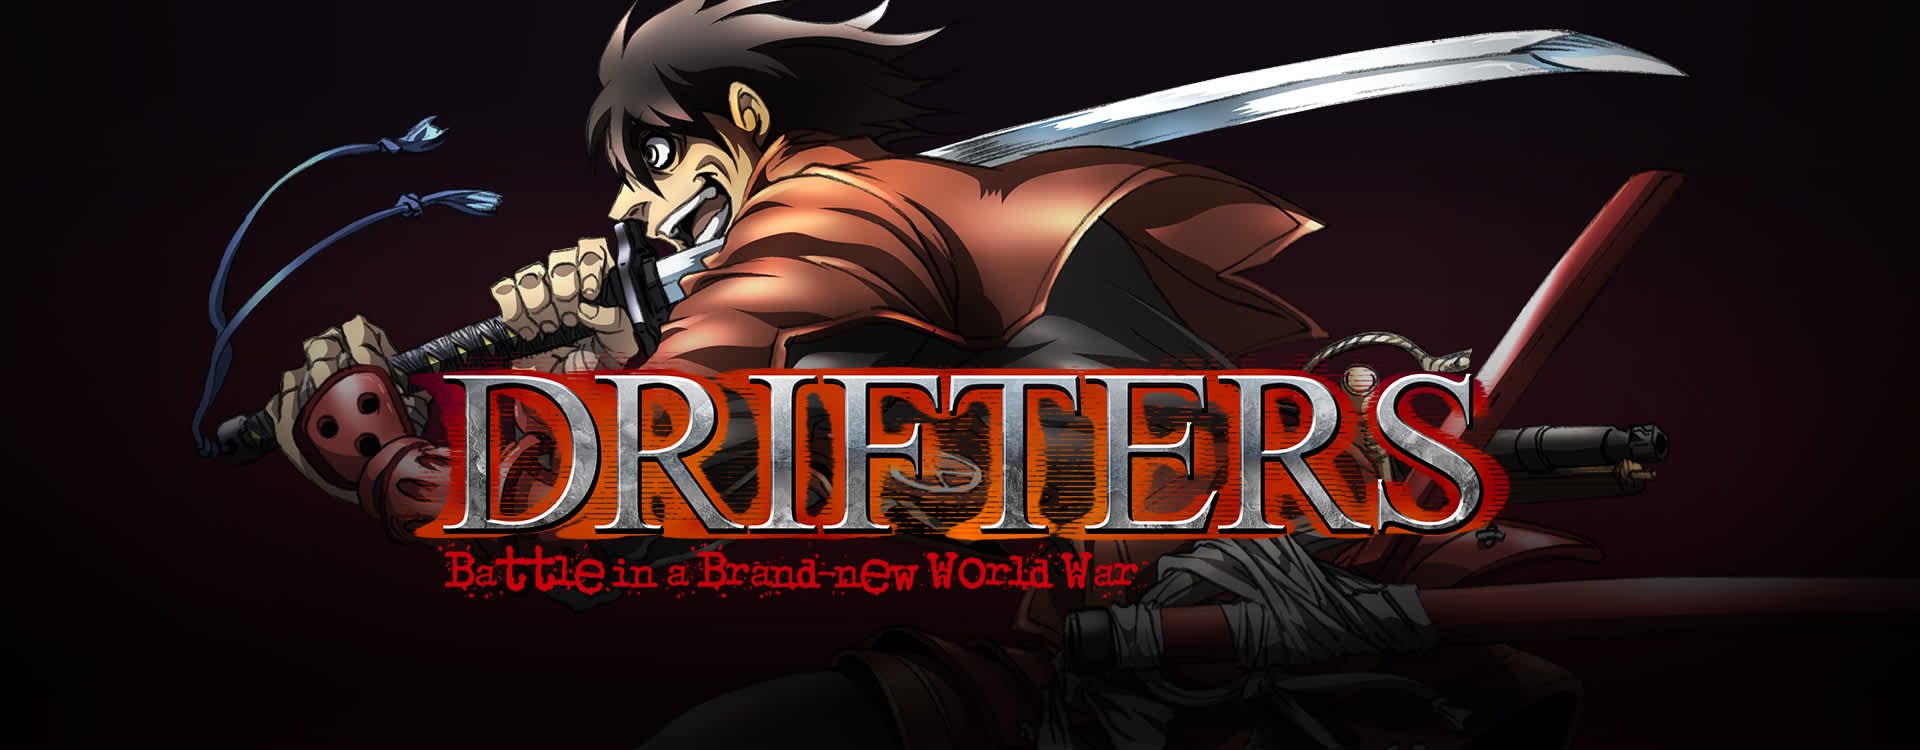 Drifters - Battle in a Brand-new World War - Trailer HD deutsch